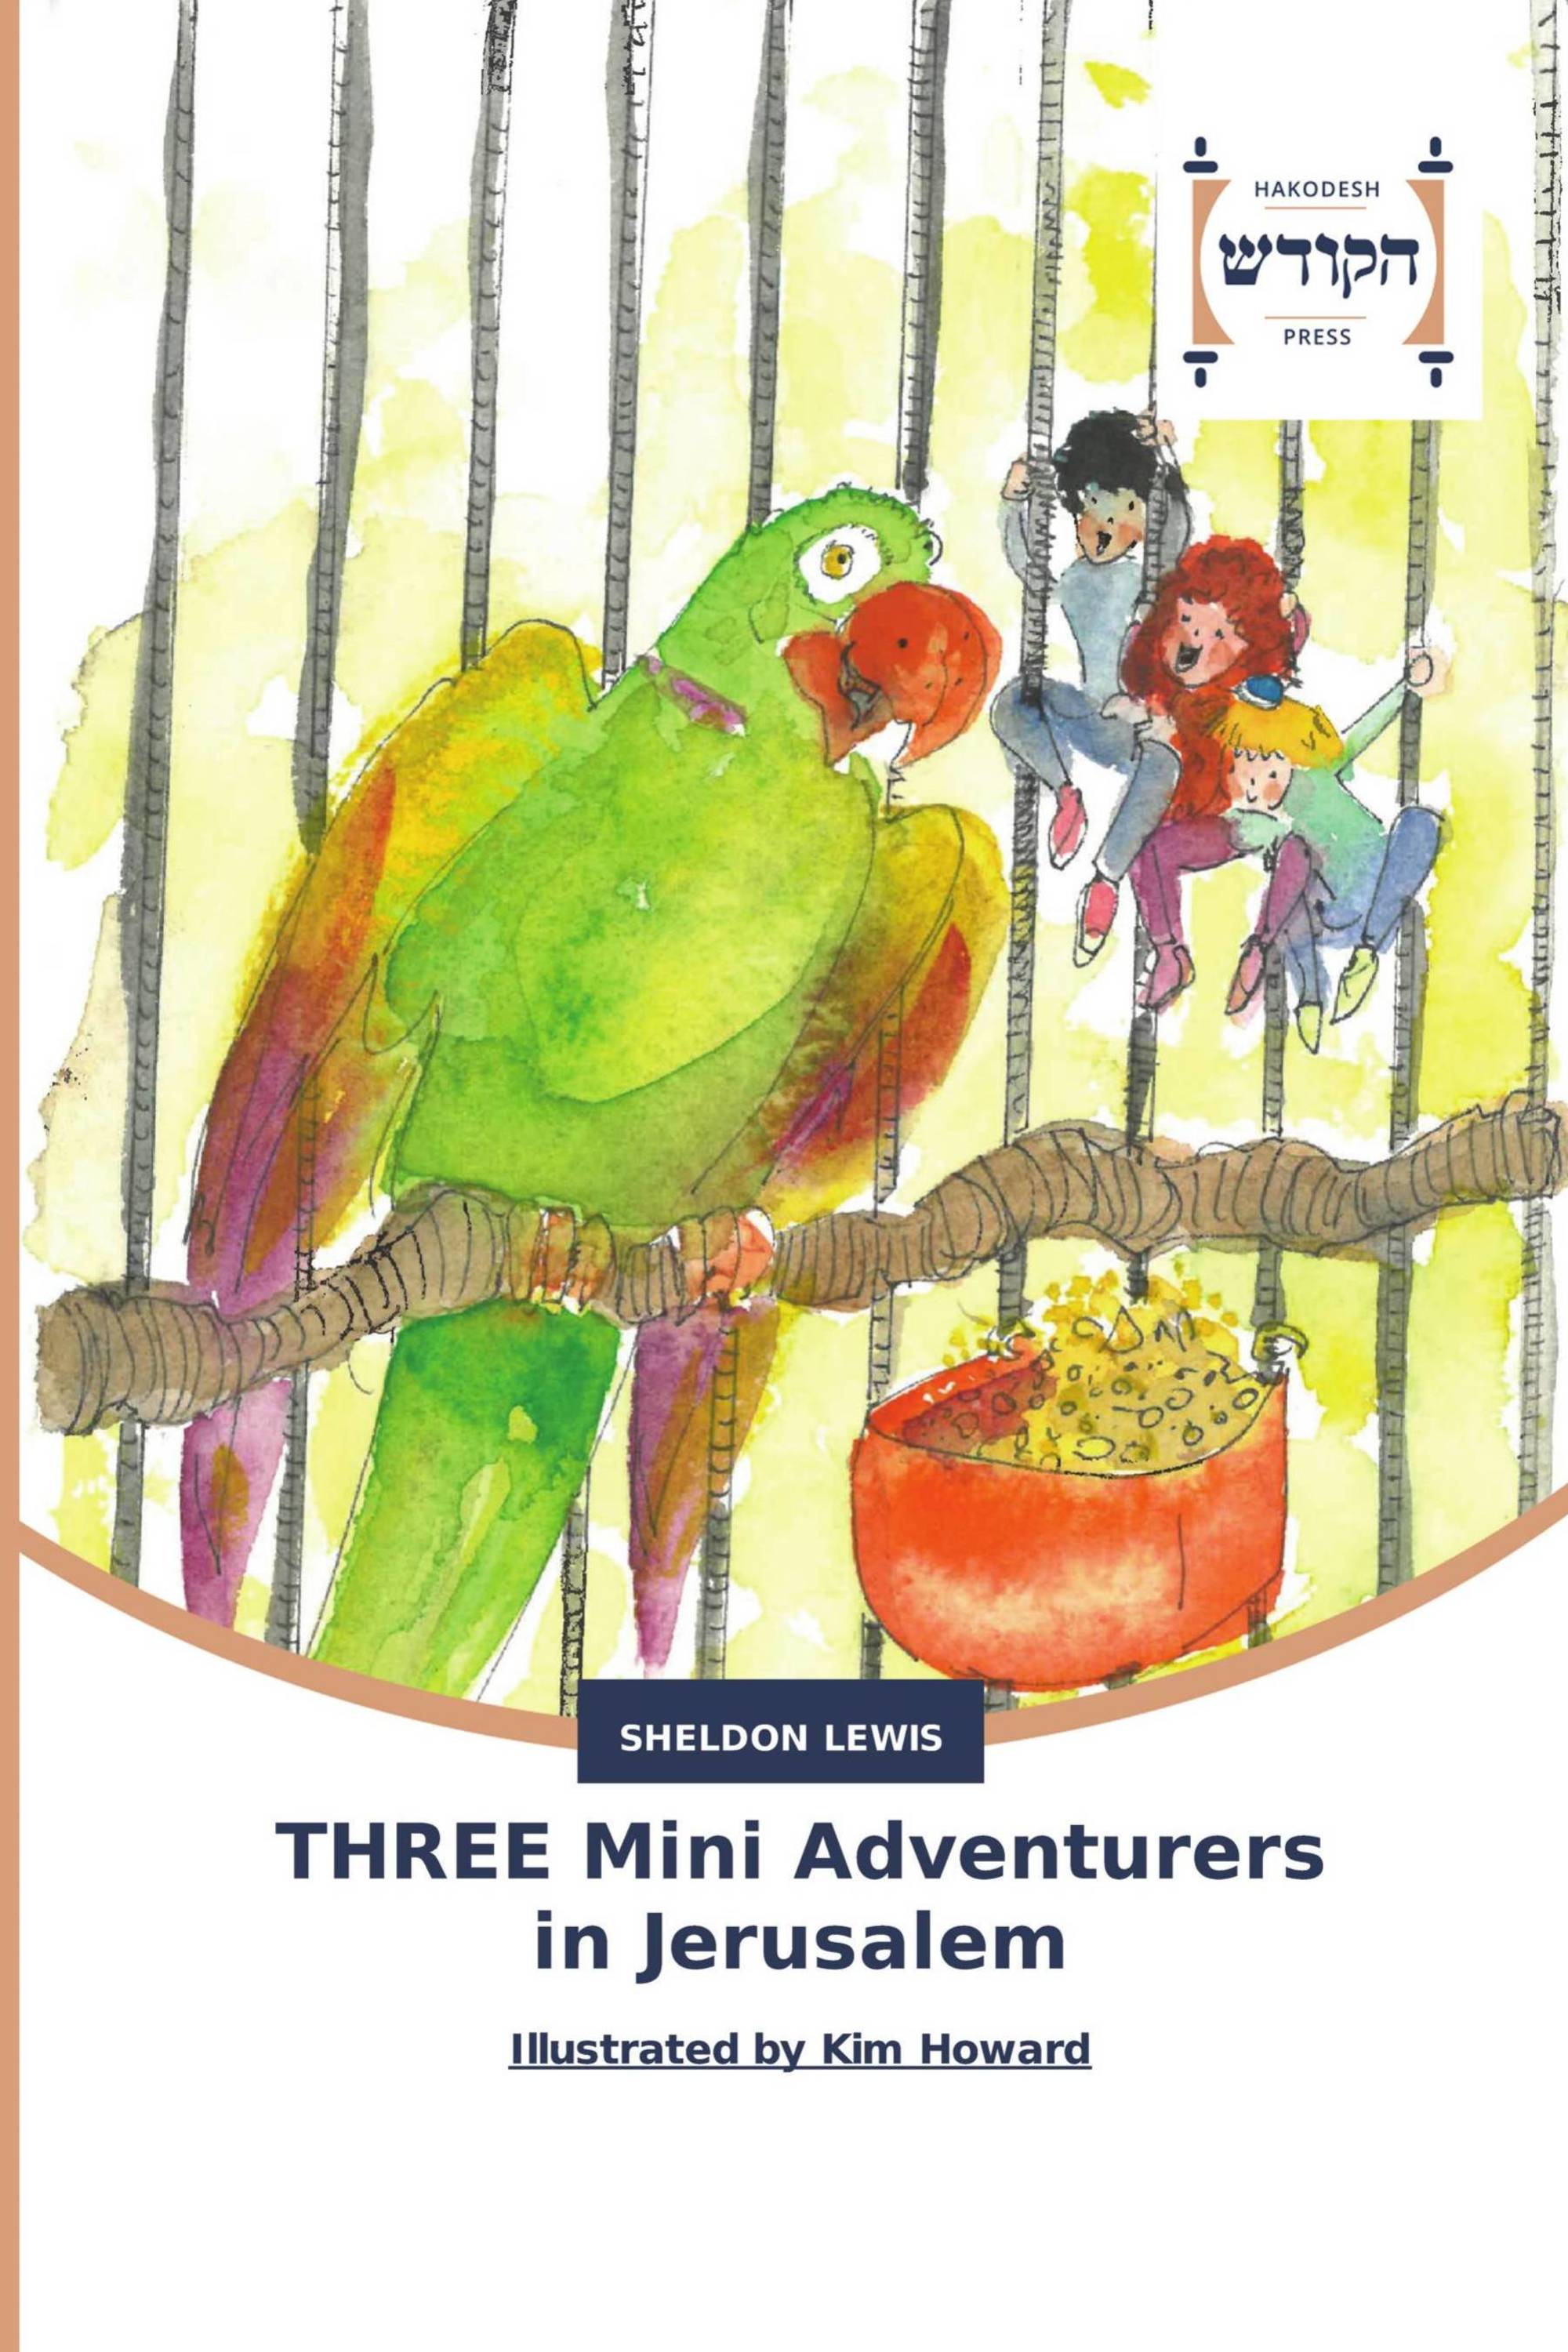 THREE Mini Adventurers in Jerusalem